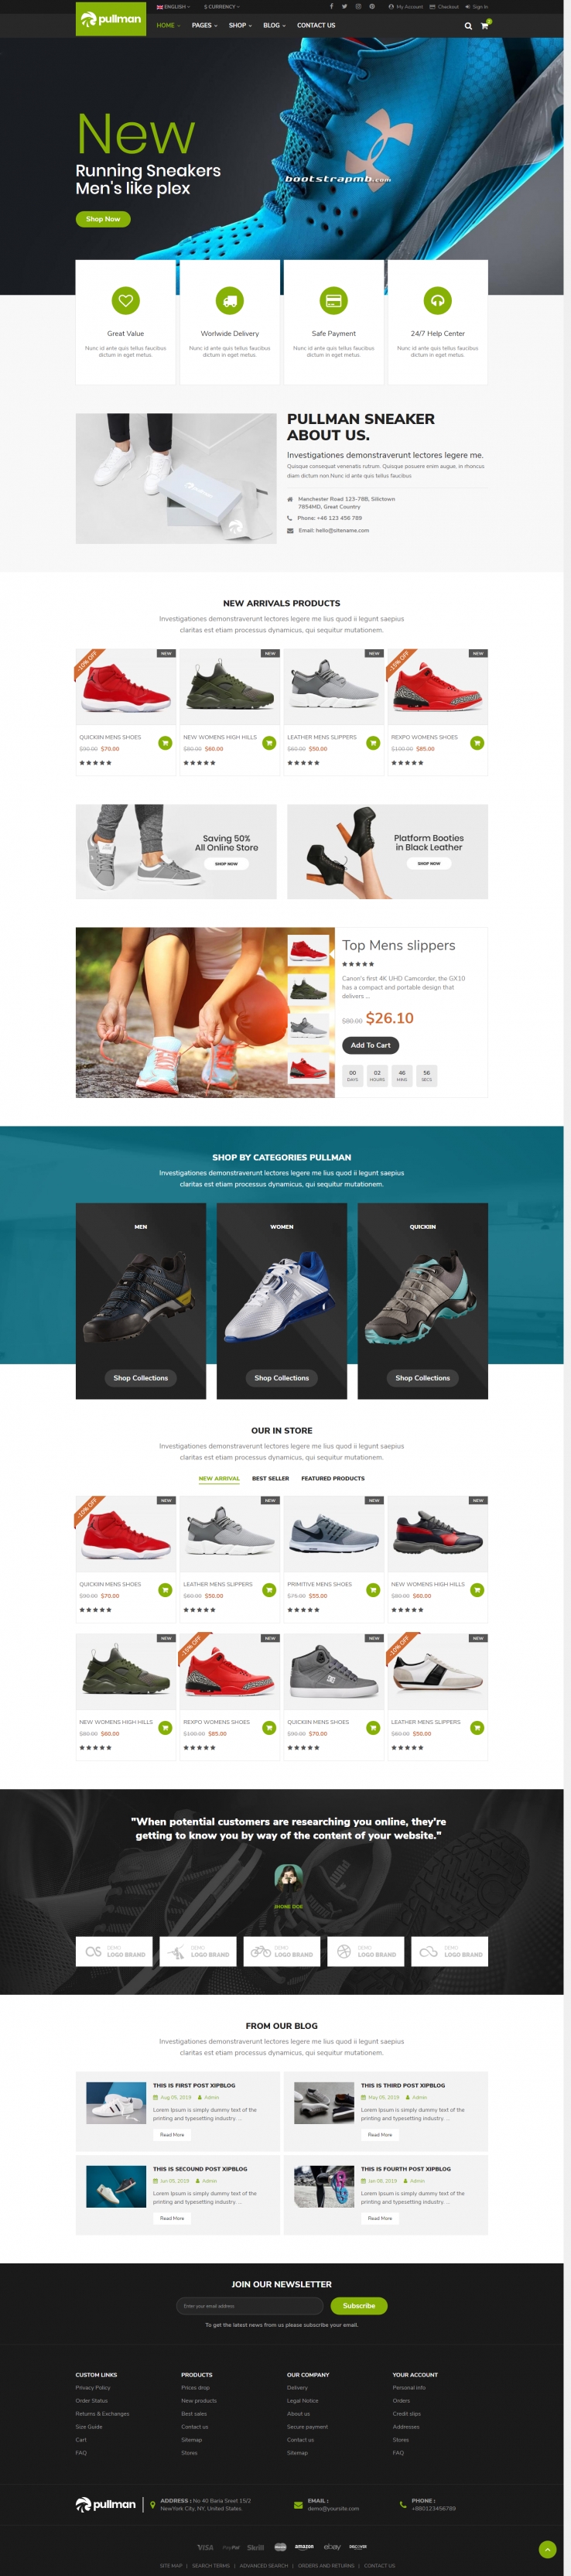 绿色欧美风格的运动鞋商城整站网站源码下载